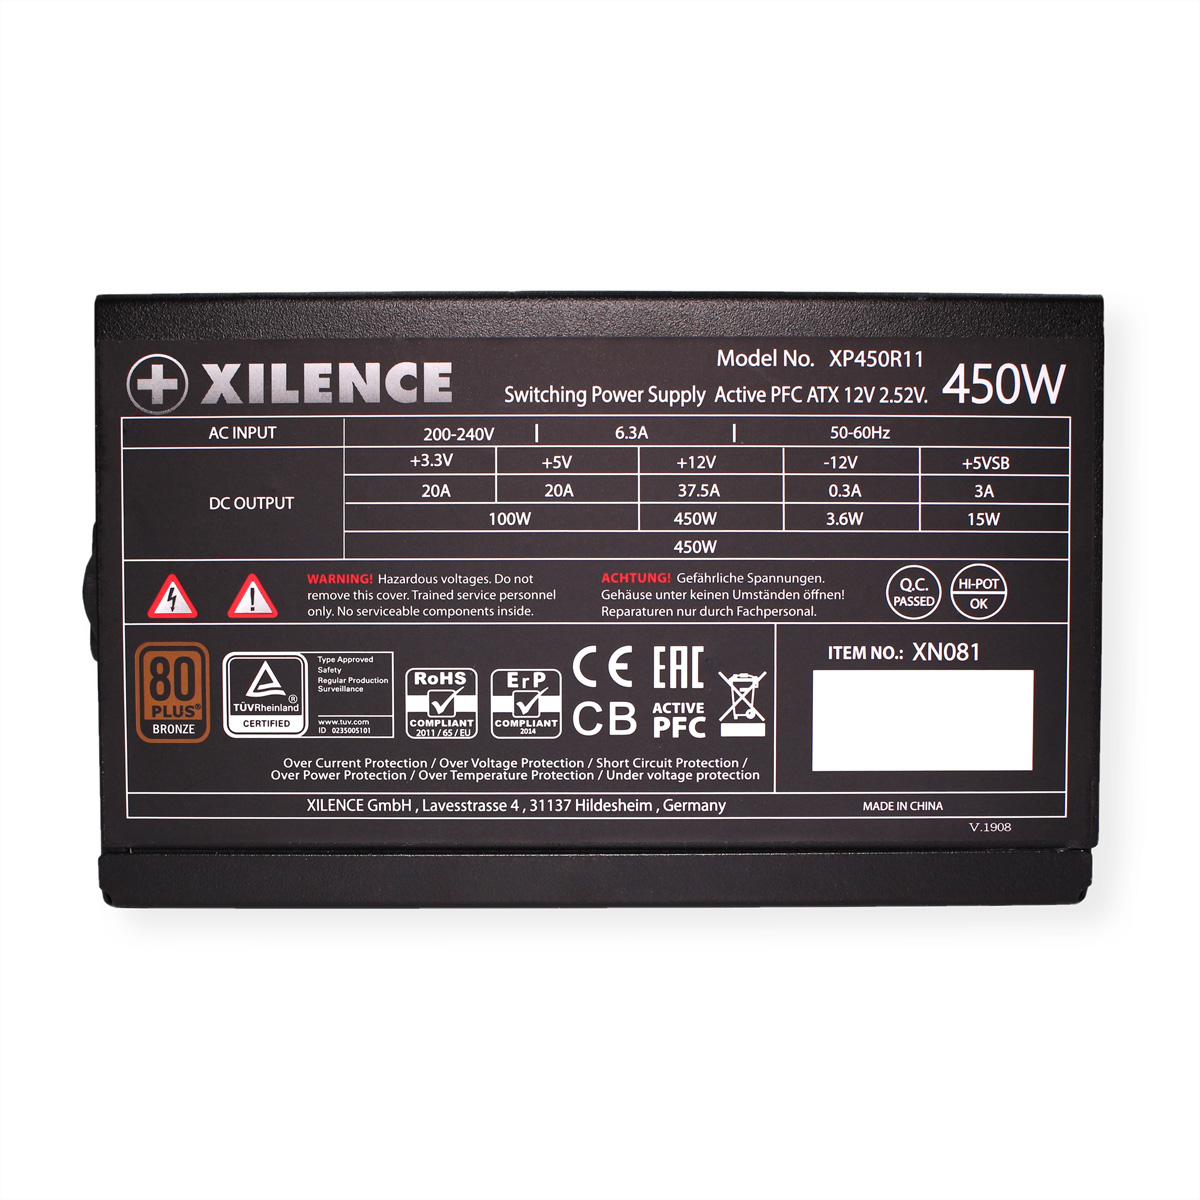 Netzteil III Watt Serie Performance PC XILENCE A+ 450